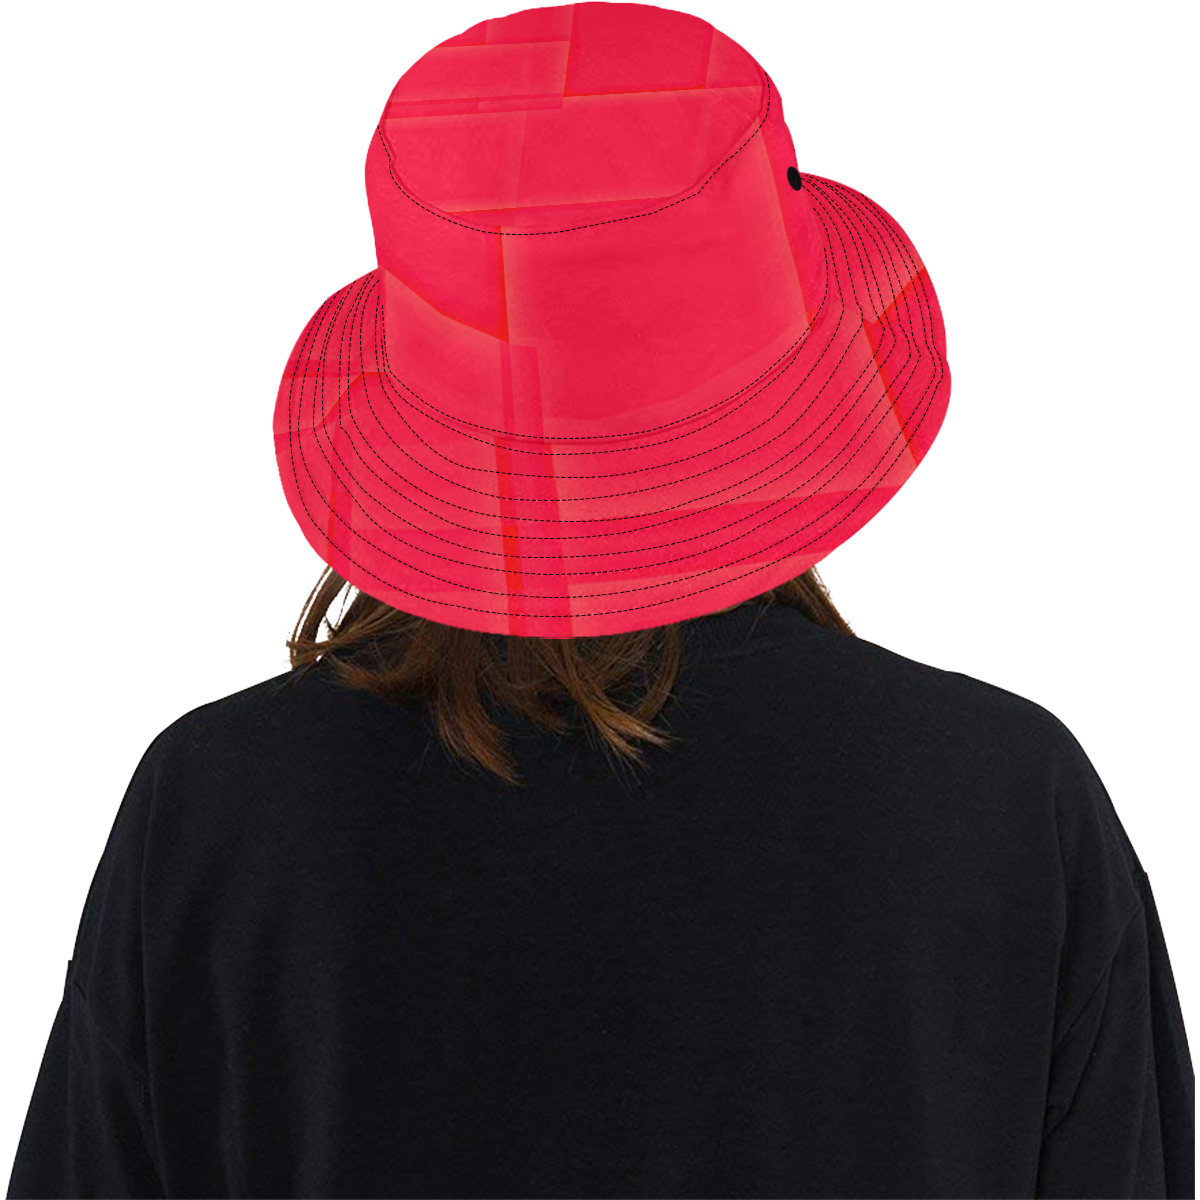 HOTTIE PYNK All Over Print Bucket Hat